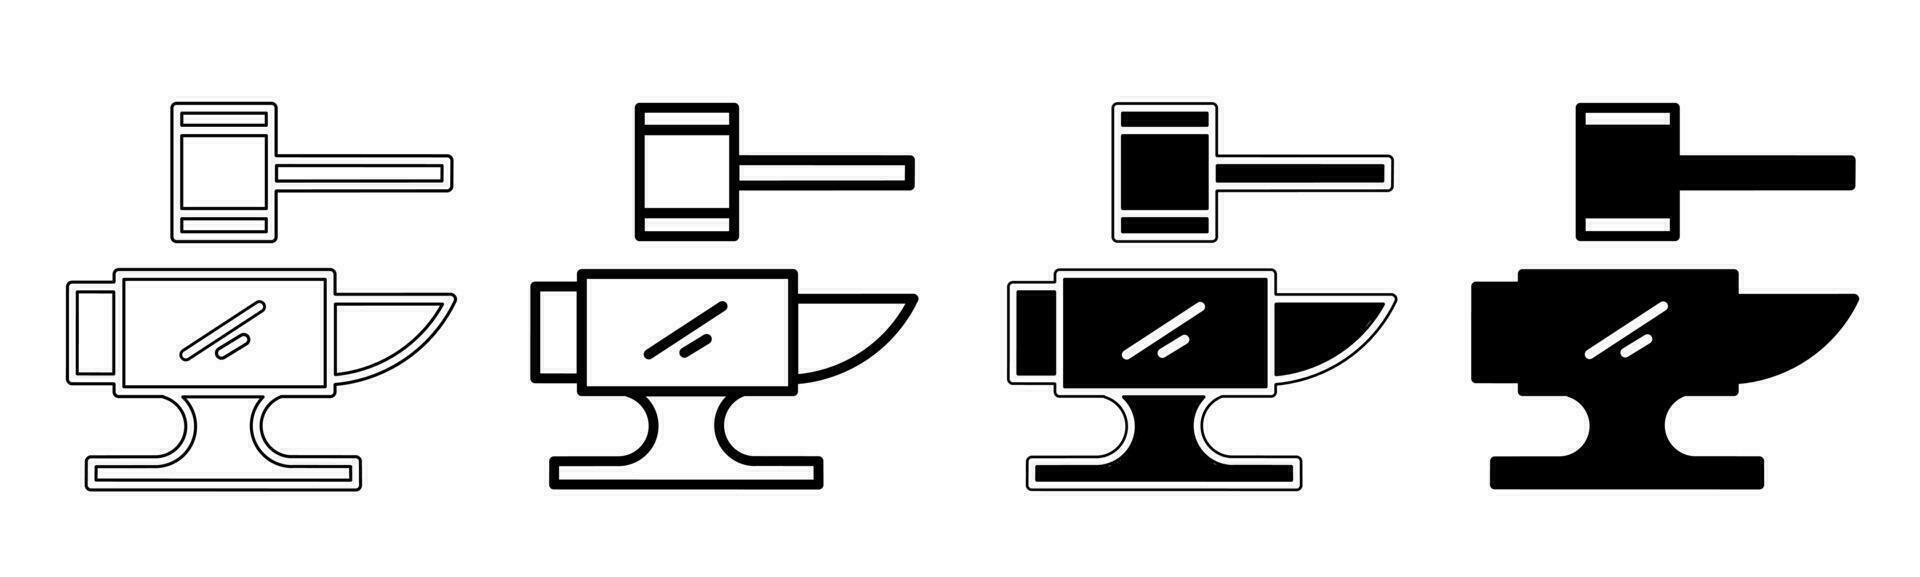 svart och vit illustration av en konstruktion Utrustning. konstruktion Utrustning ikon samling med linje. stock vektor illustration.